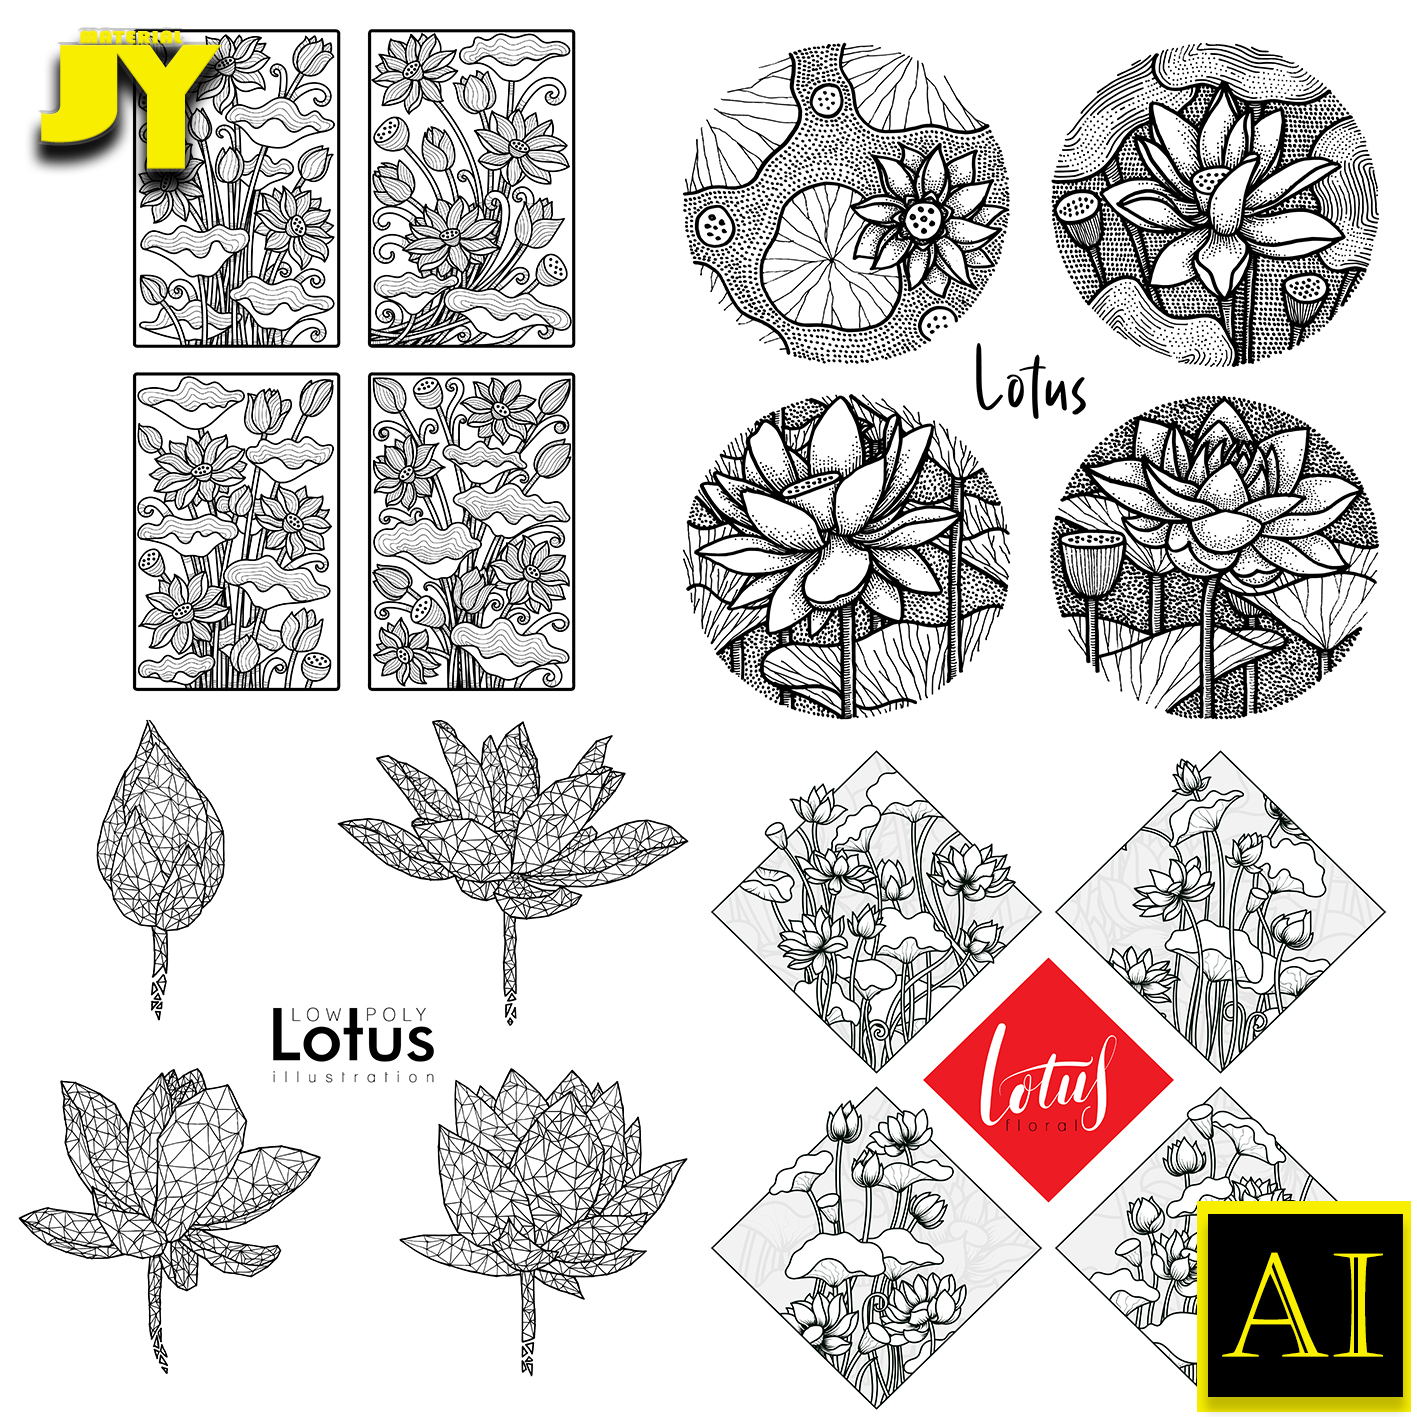 手绘线描素描白描荷花莲花植物花卉几何线条荷花插画设计矢量素材